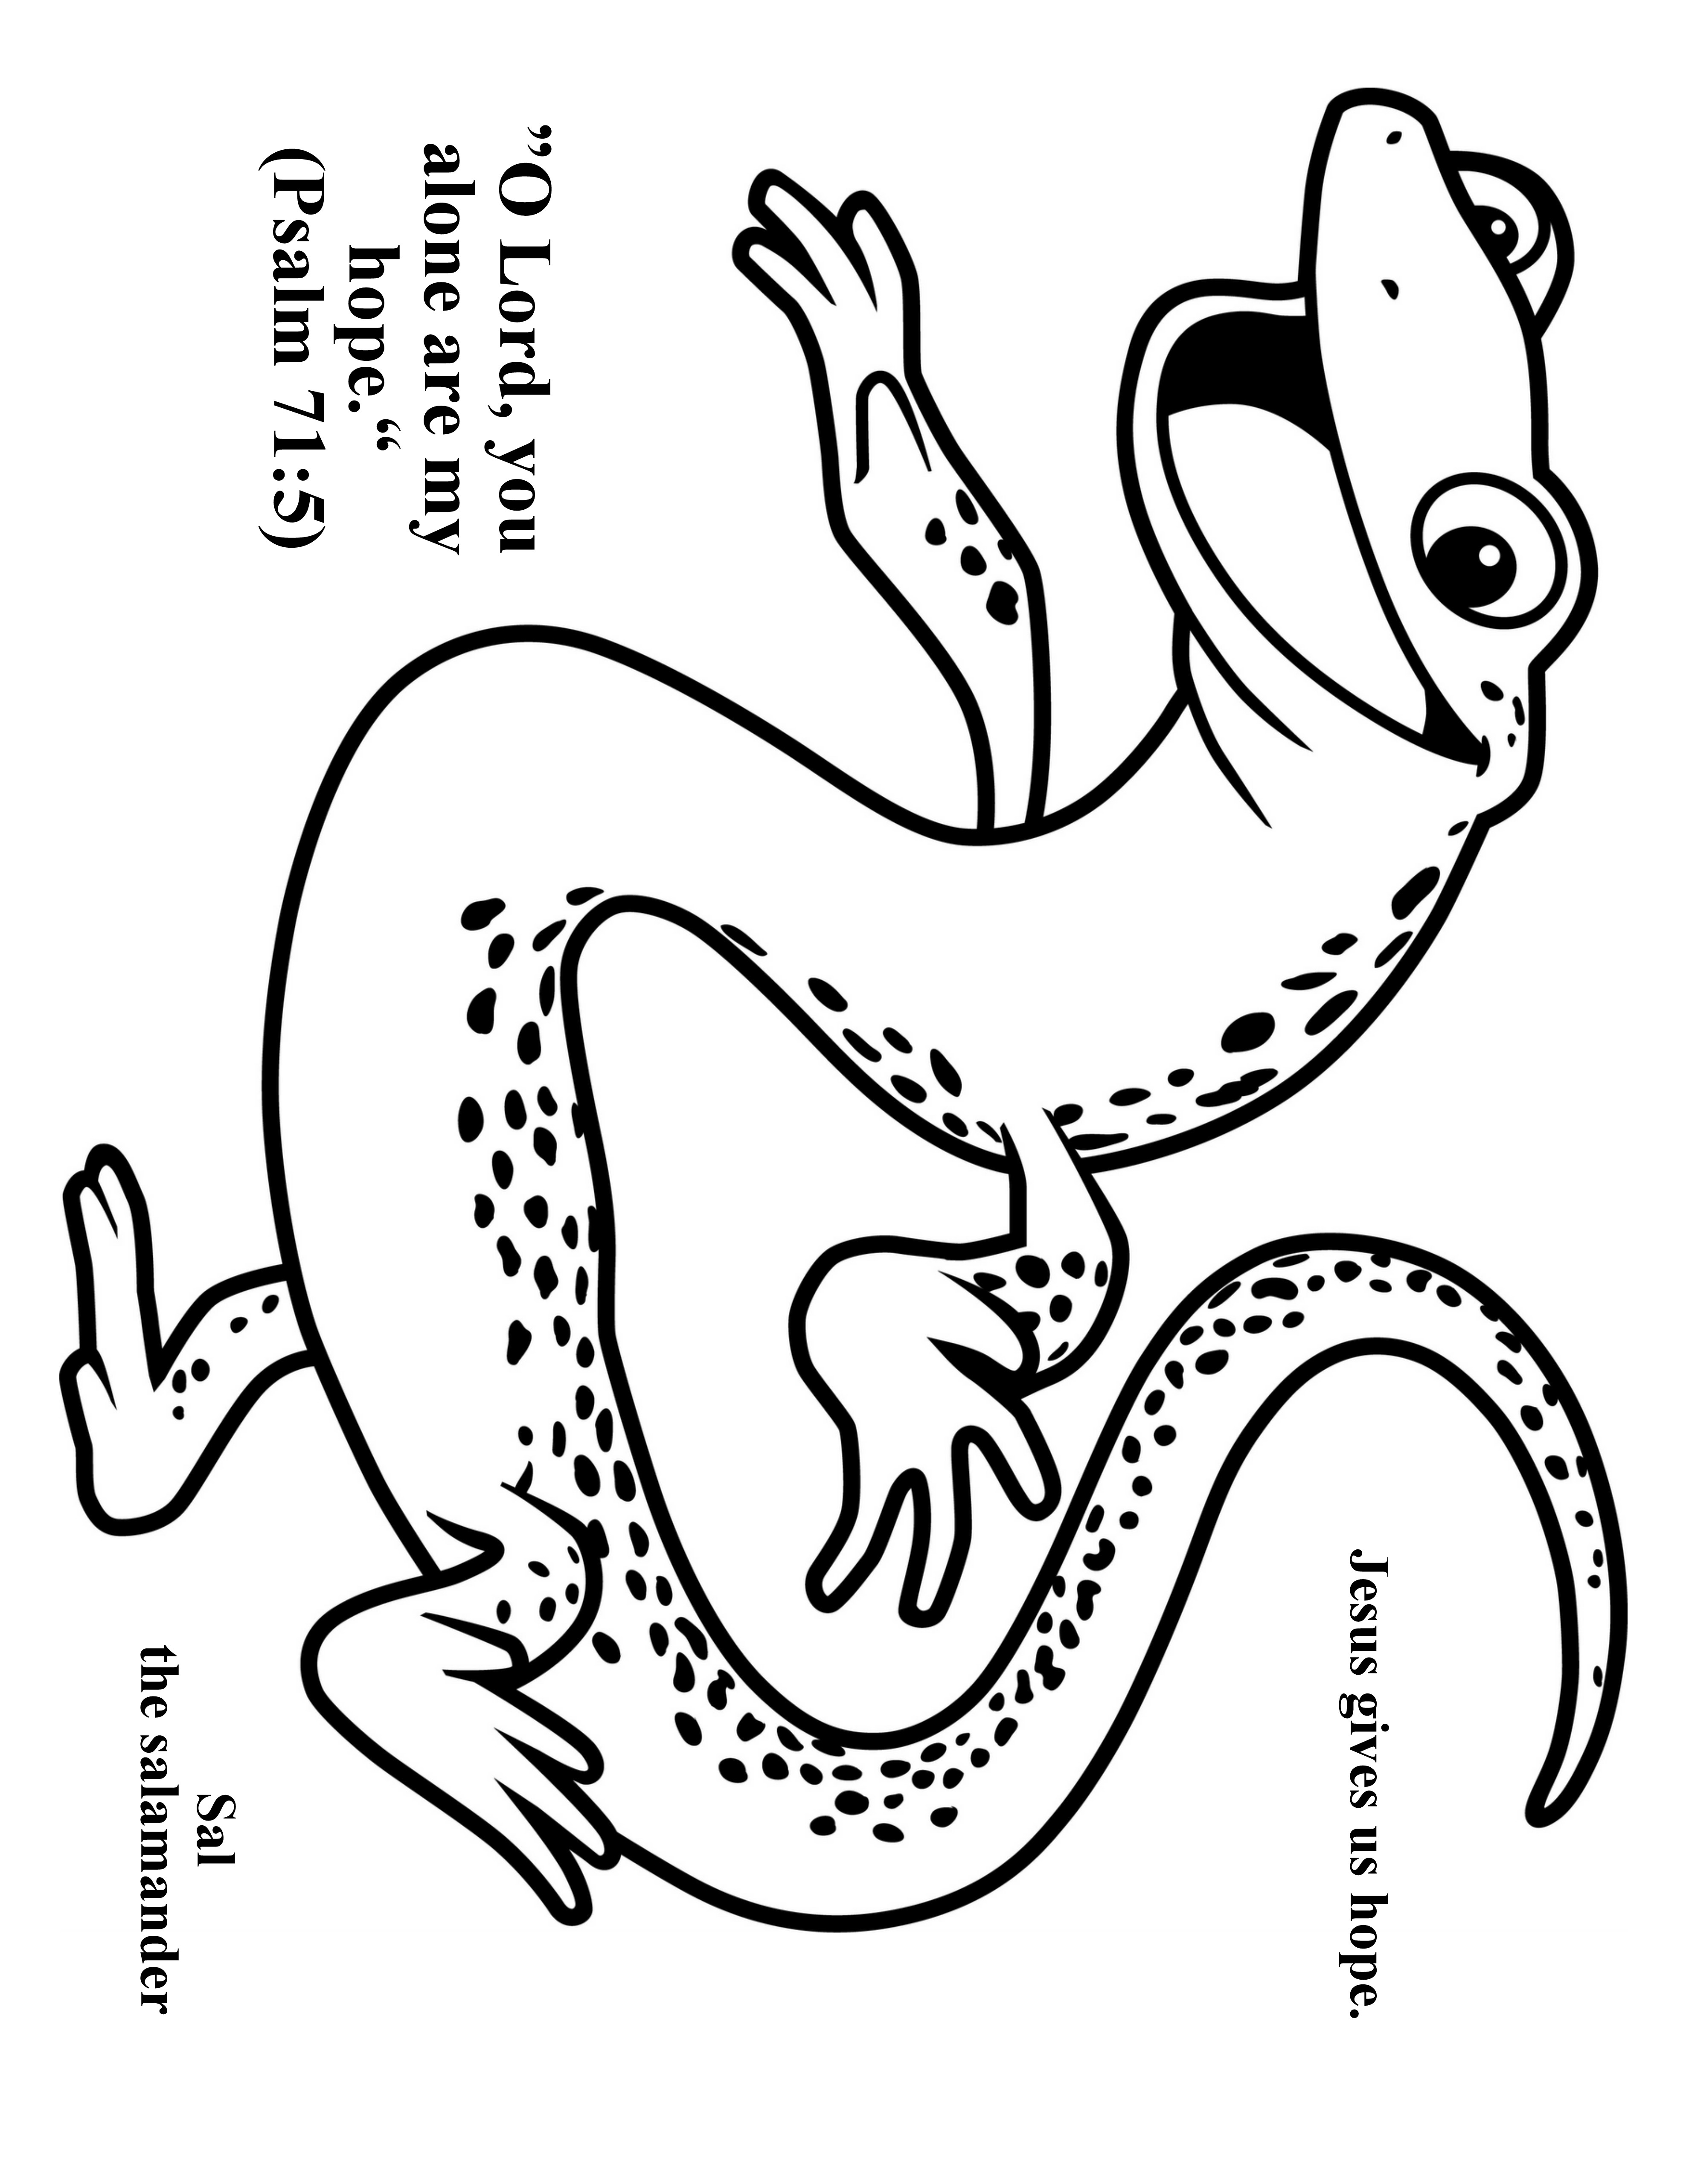 salamander-drawing-coloring-pages